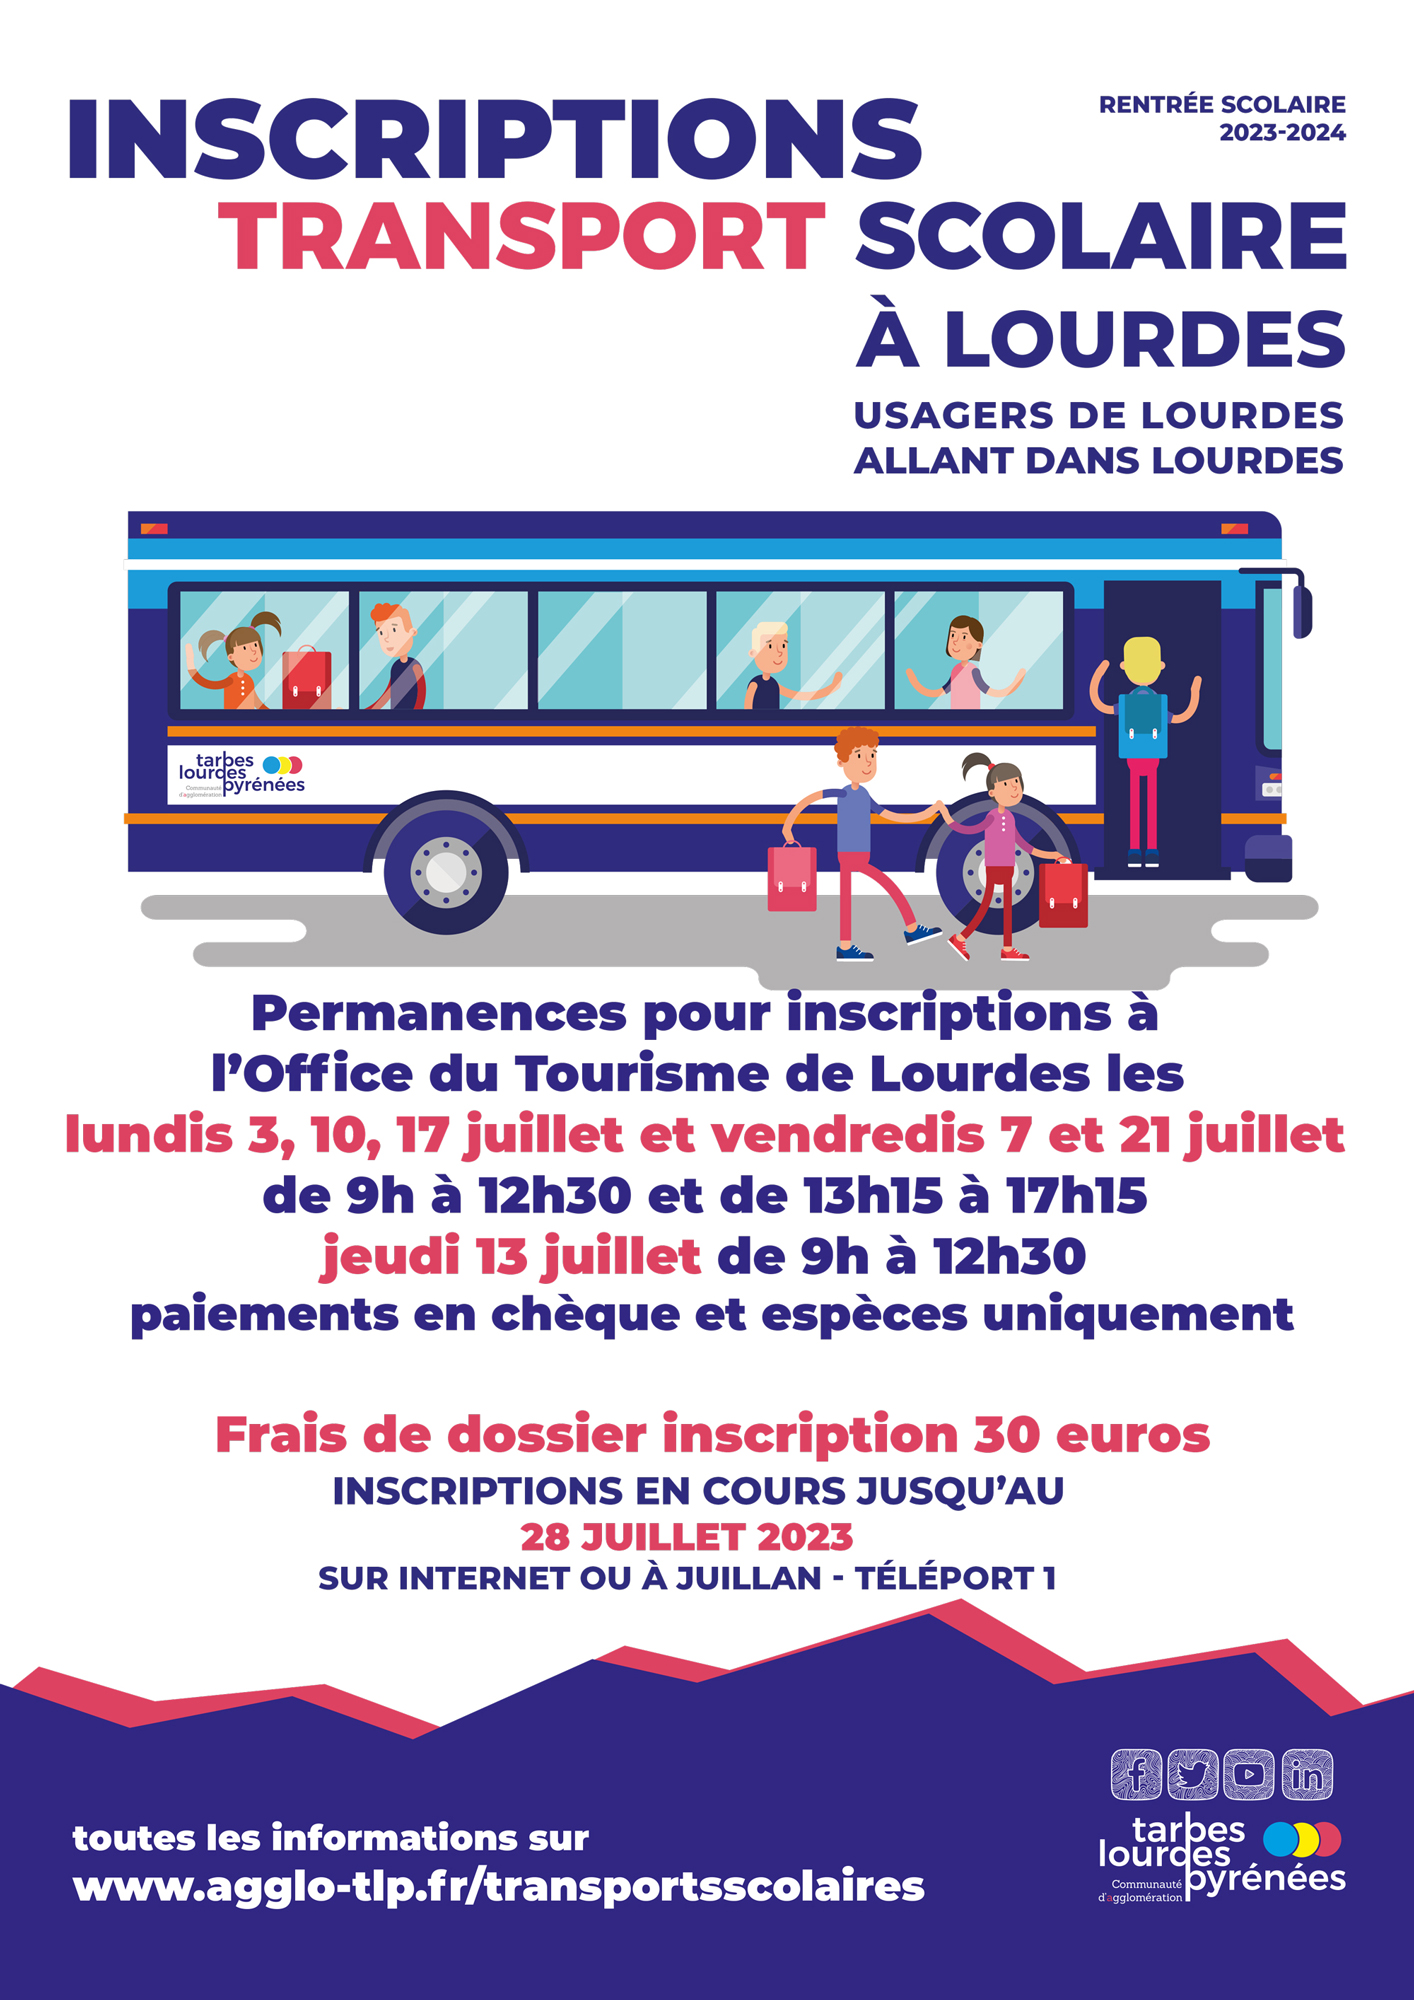  Inscription transport scolaire 2023-2024 Lourdes